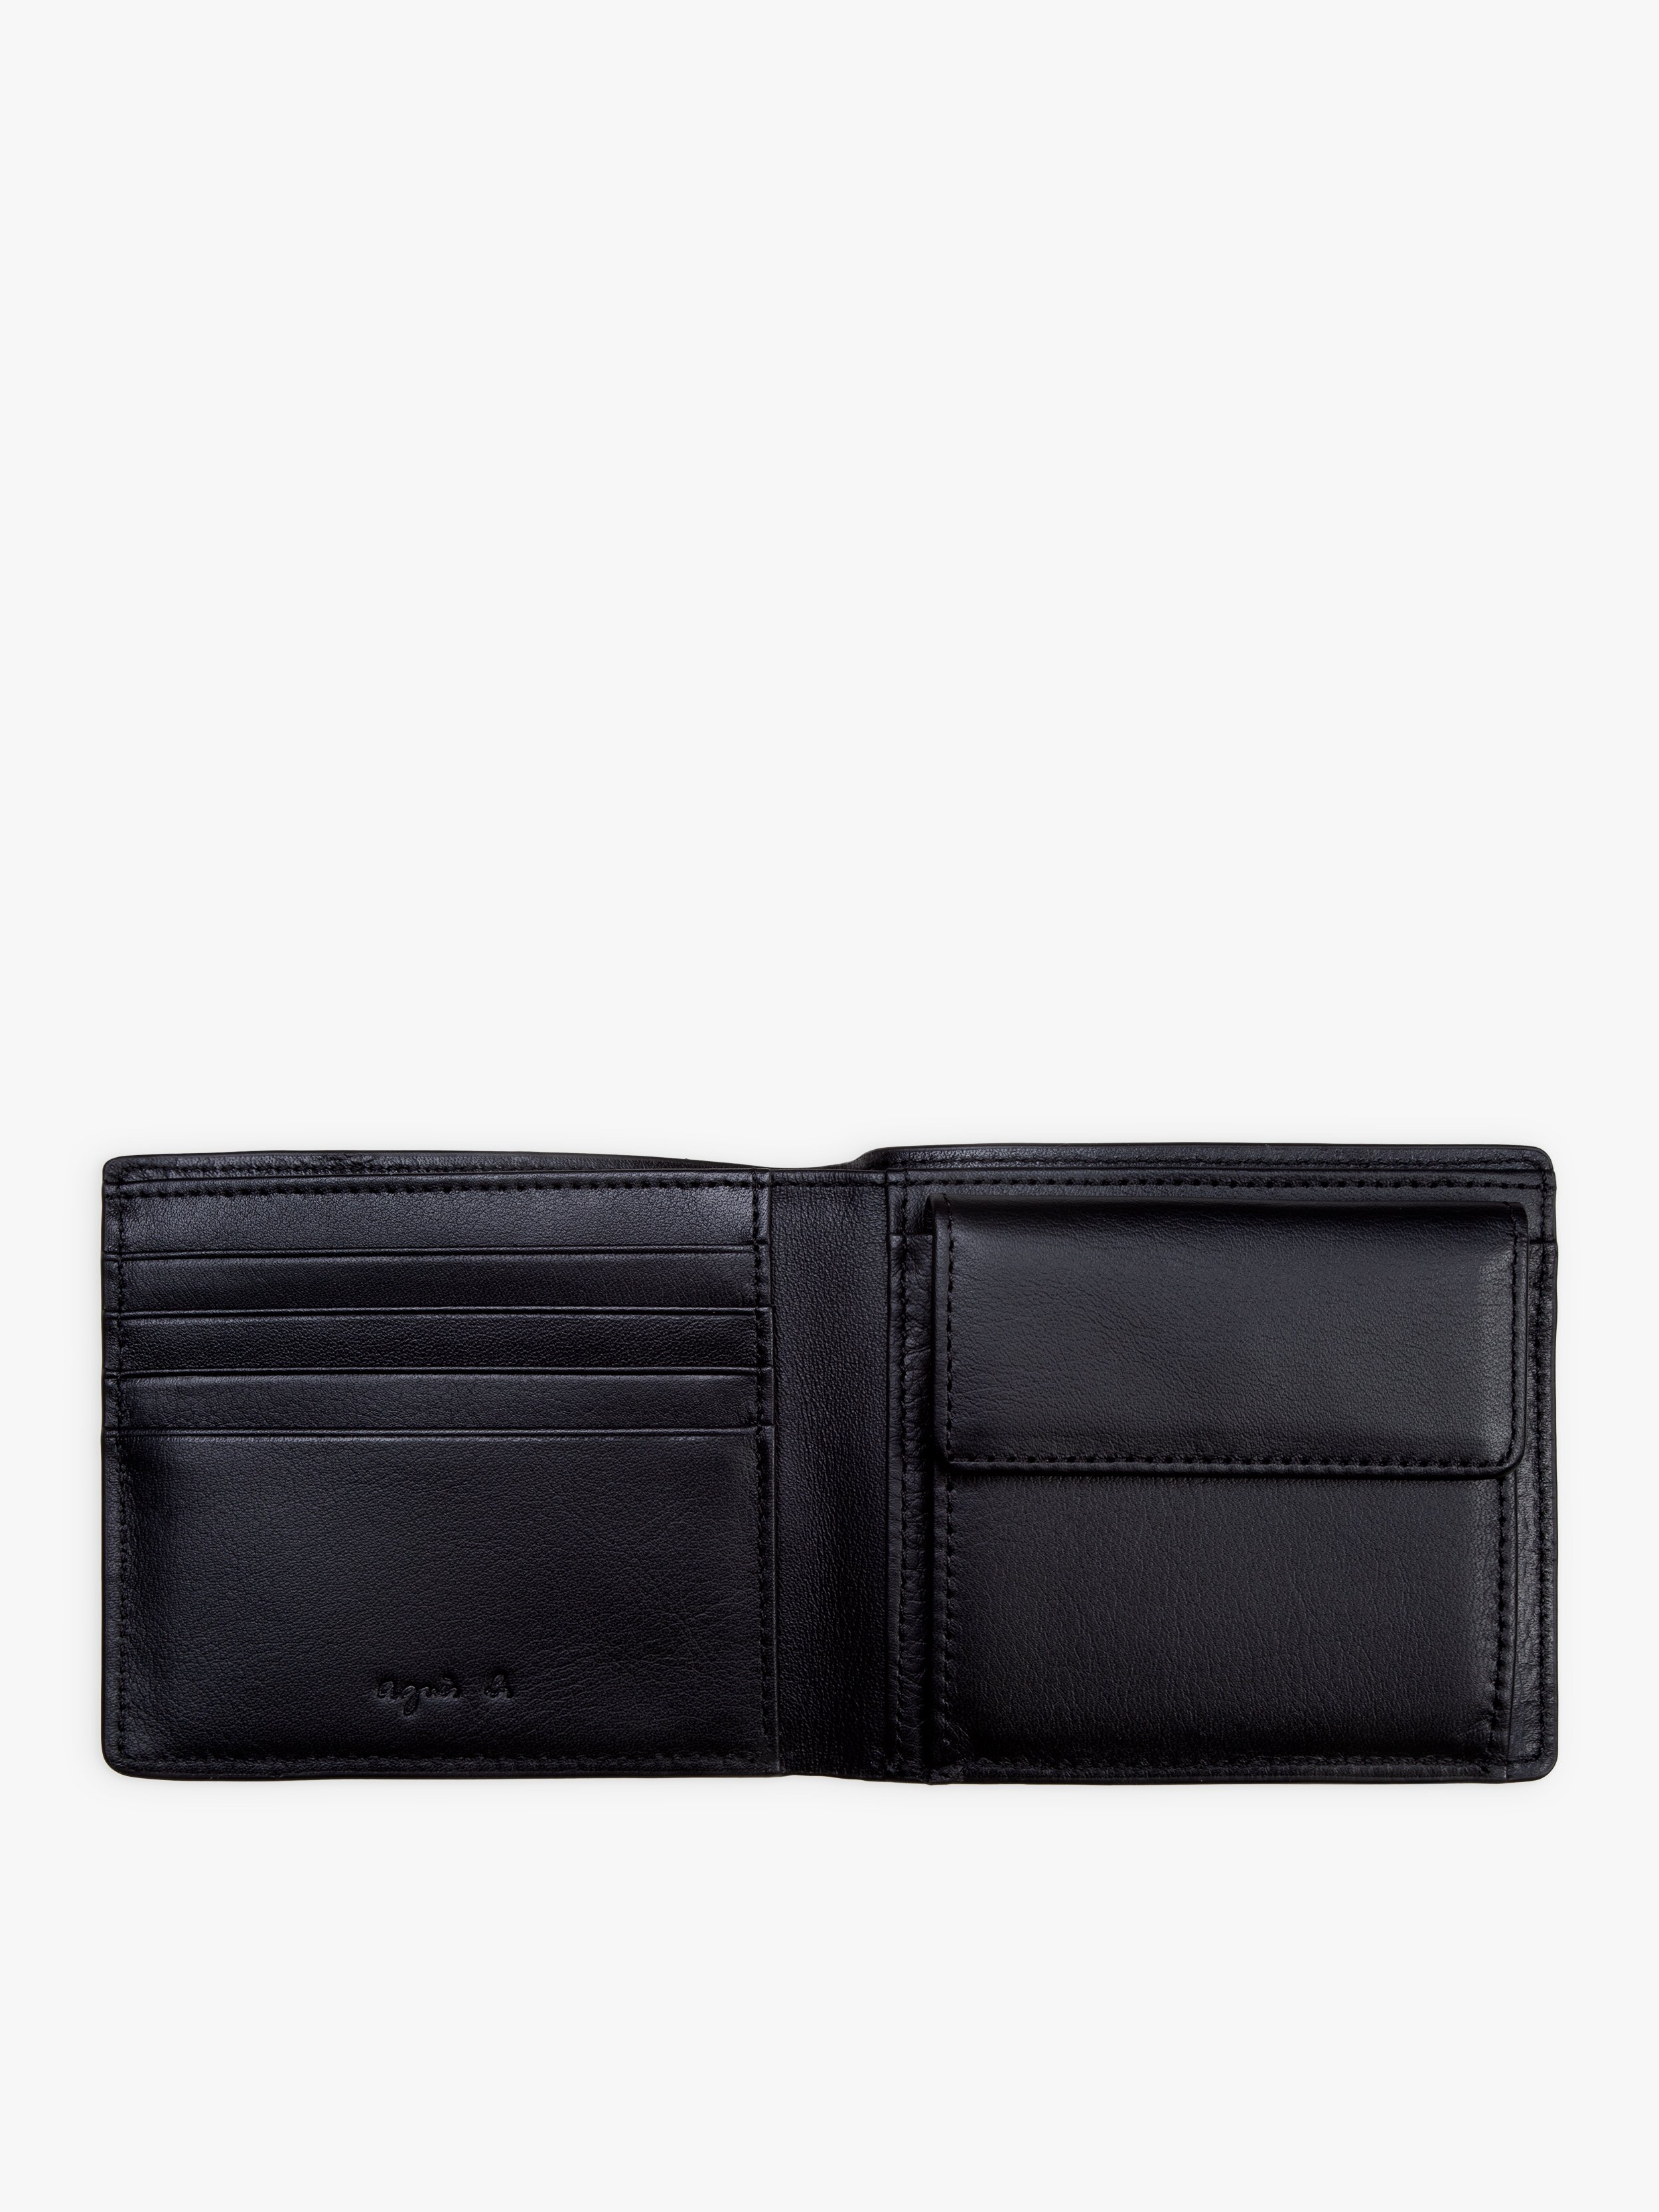 gips Jeg vil have Med vilje black folding leather wallet with elastic closure | agnès b.